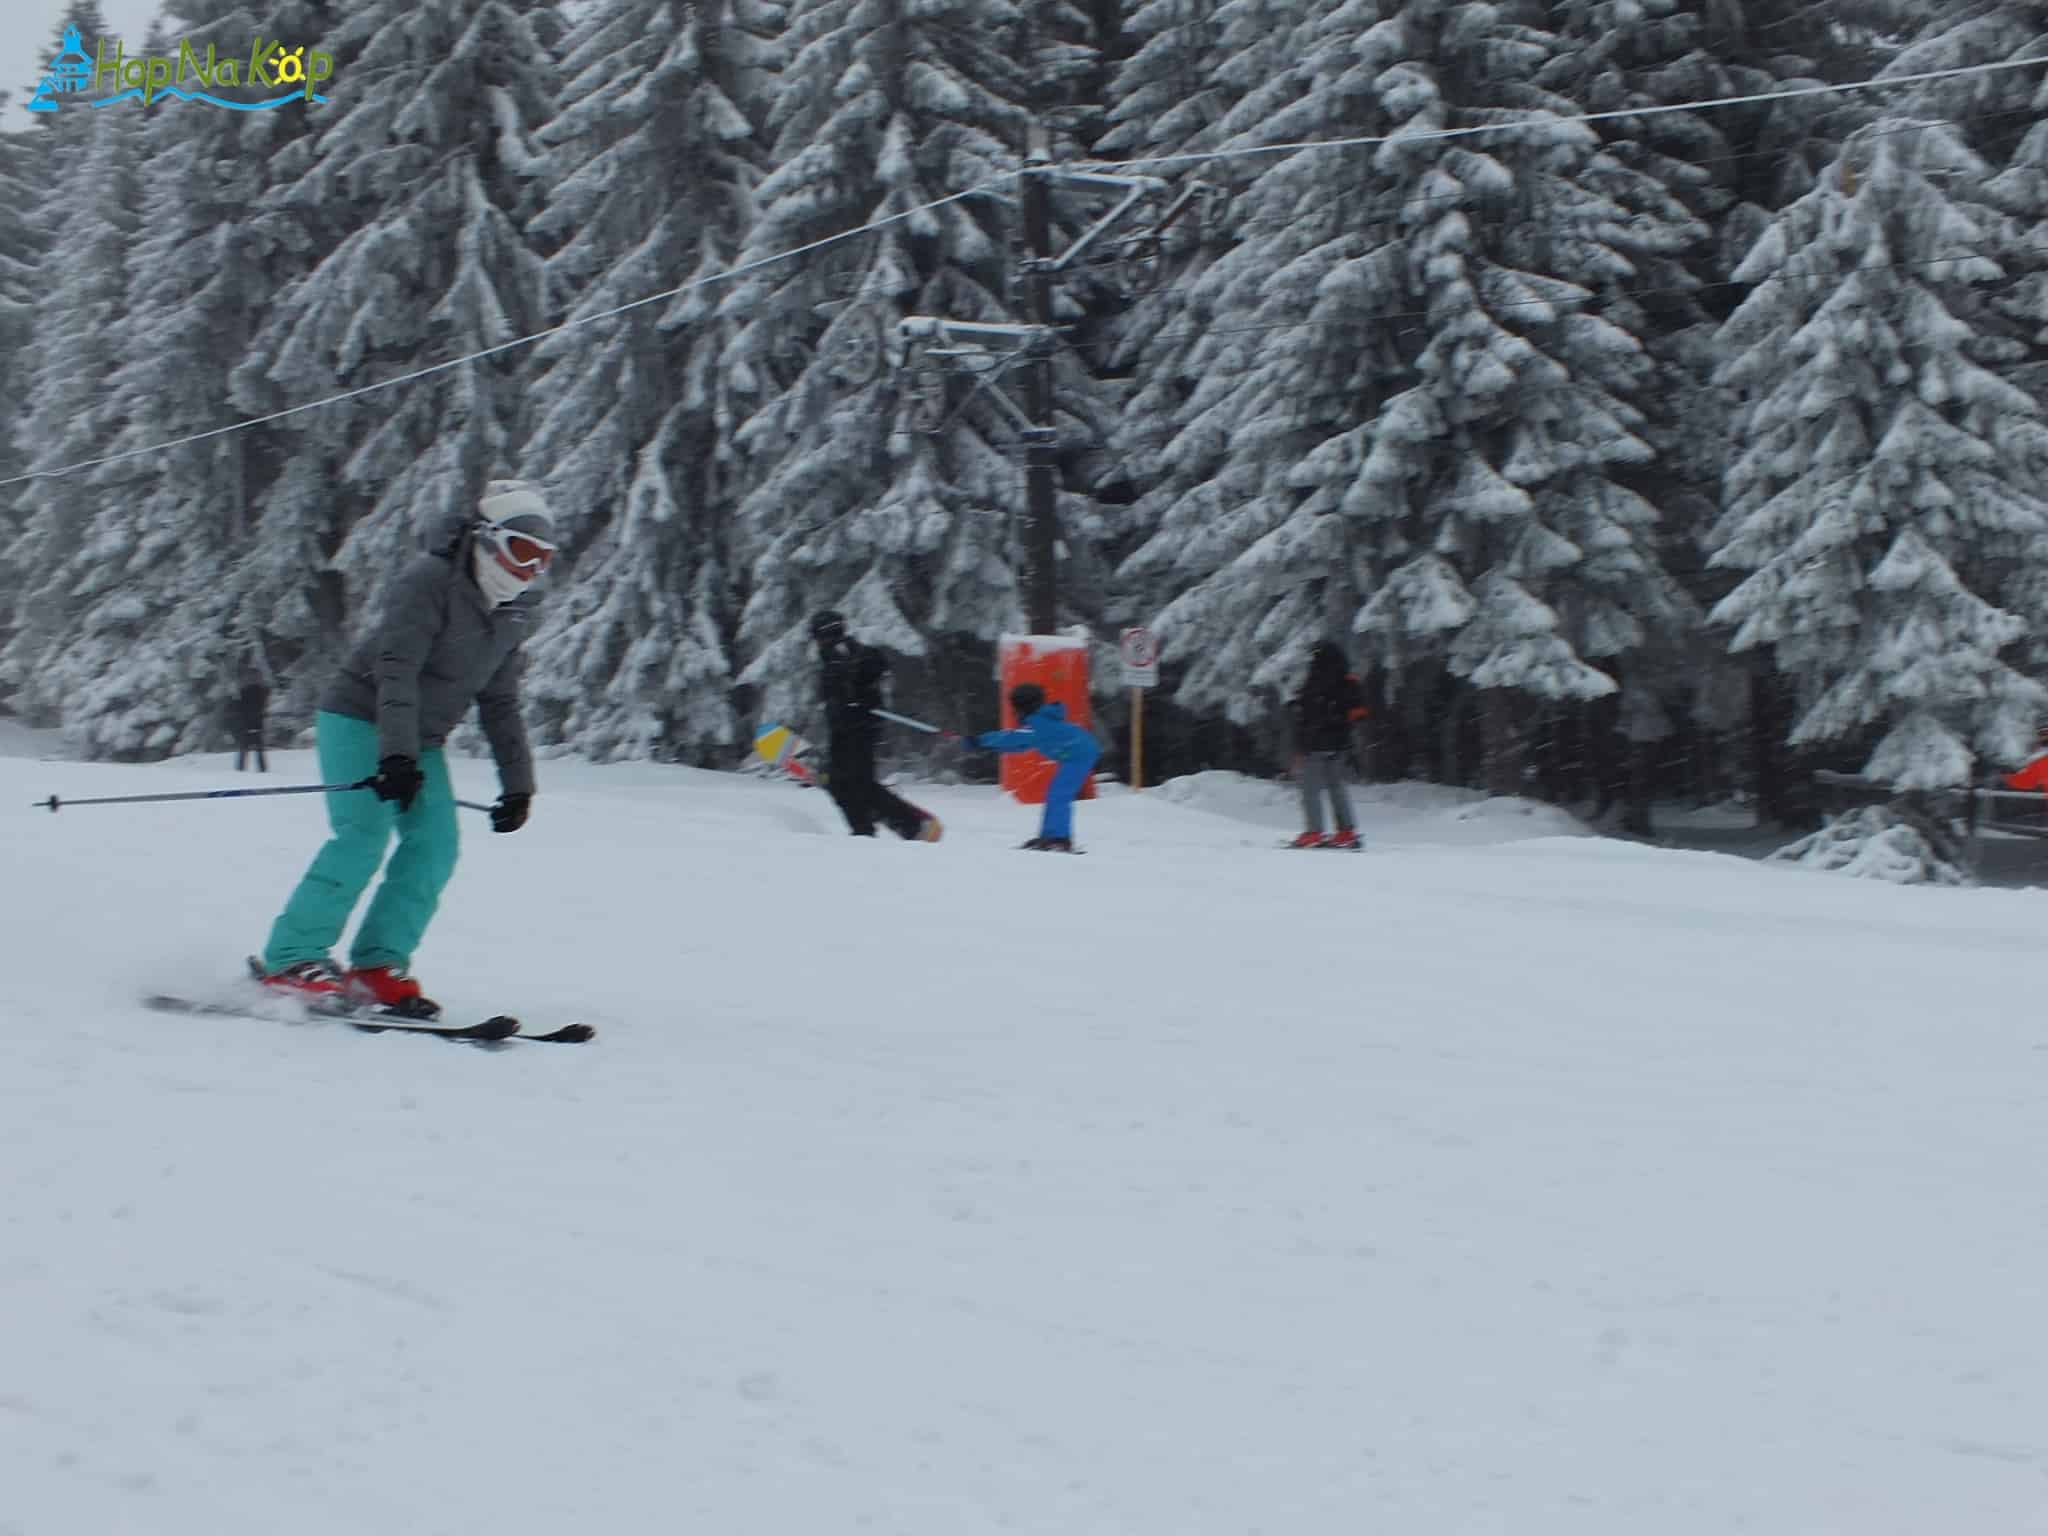 Od sutra duže skijanje na Kopaoniku: Od subote, 23. januara, sve instalacije u u ski centru Kopaonik rade pola sata duže,  do 16.30h.Skijaši i borderi